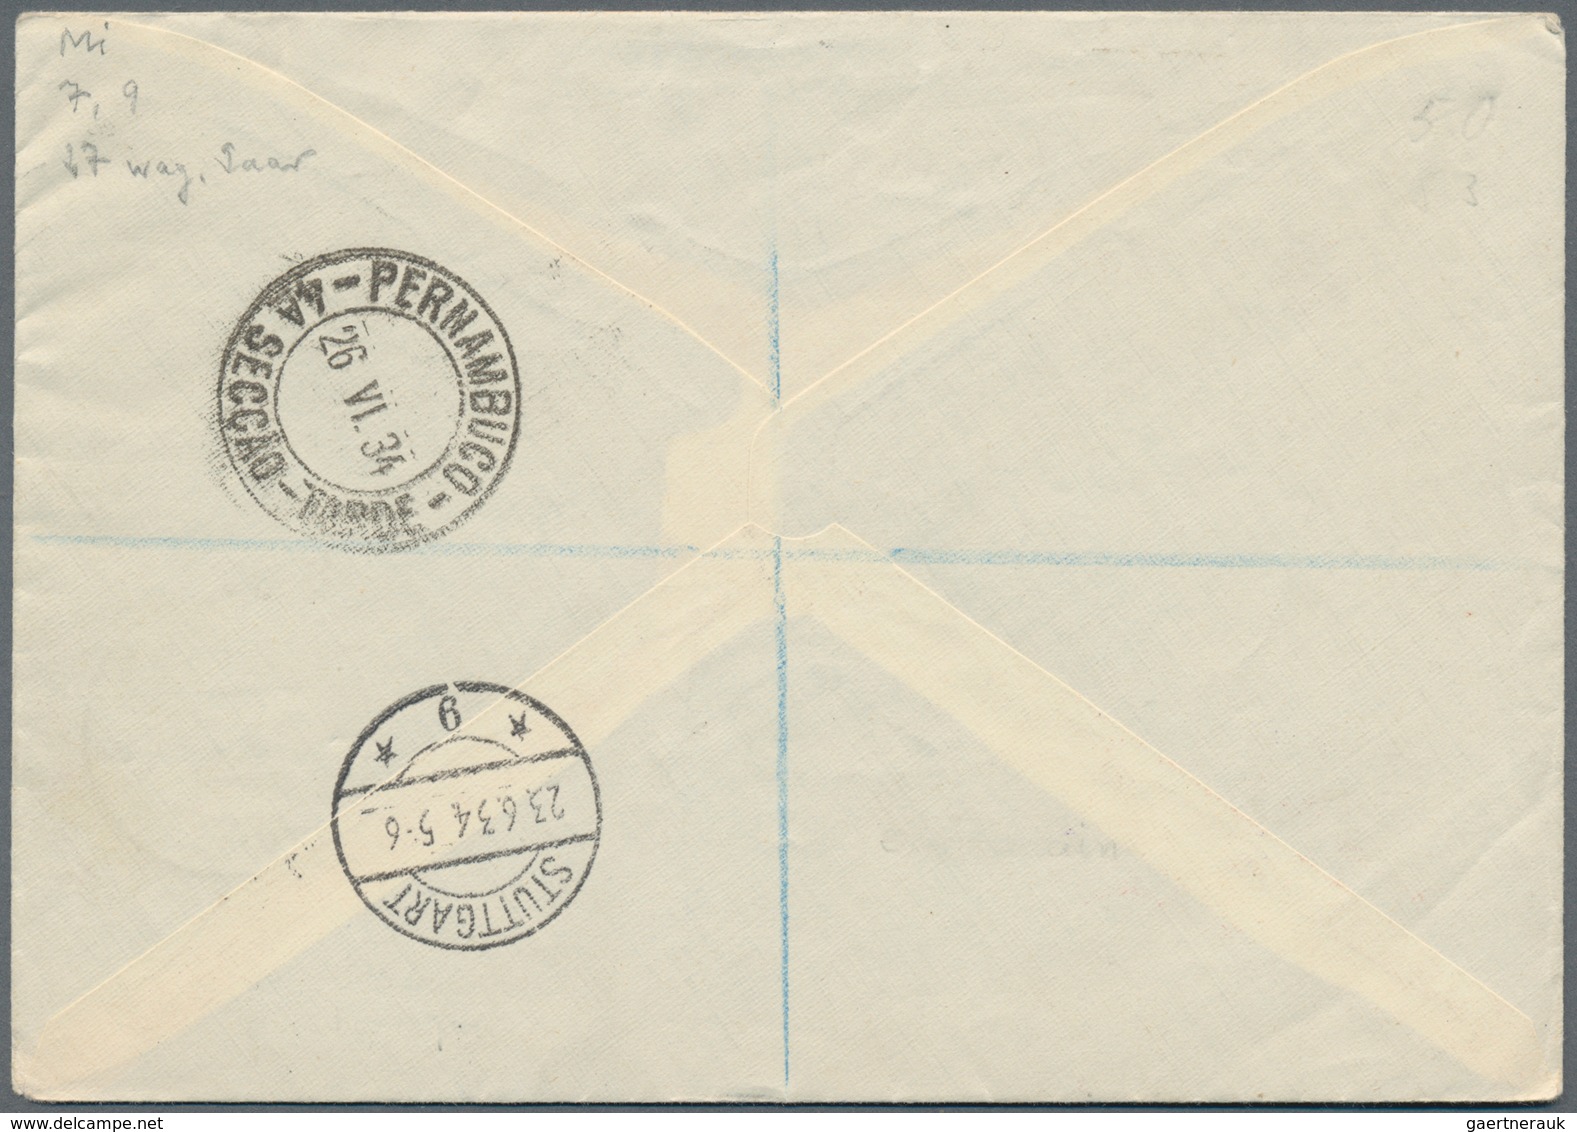 Kuwait: 1934, KUWAIT/ARGENTINIENFAHRT: Beeindruckender Brief Mit Anschlußflug STUTTGART über FHFN, M - Kuwait